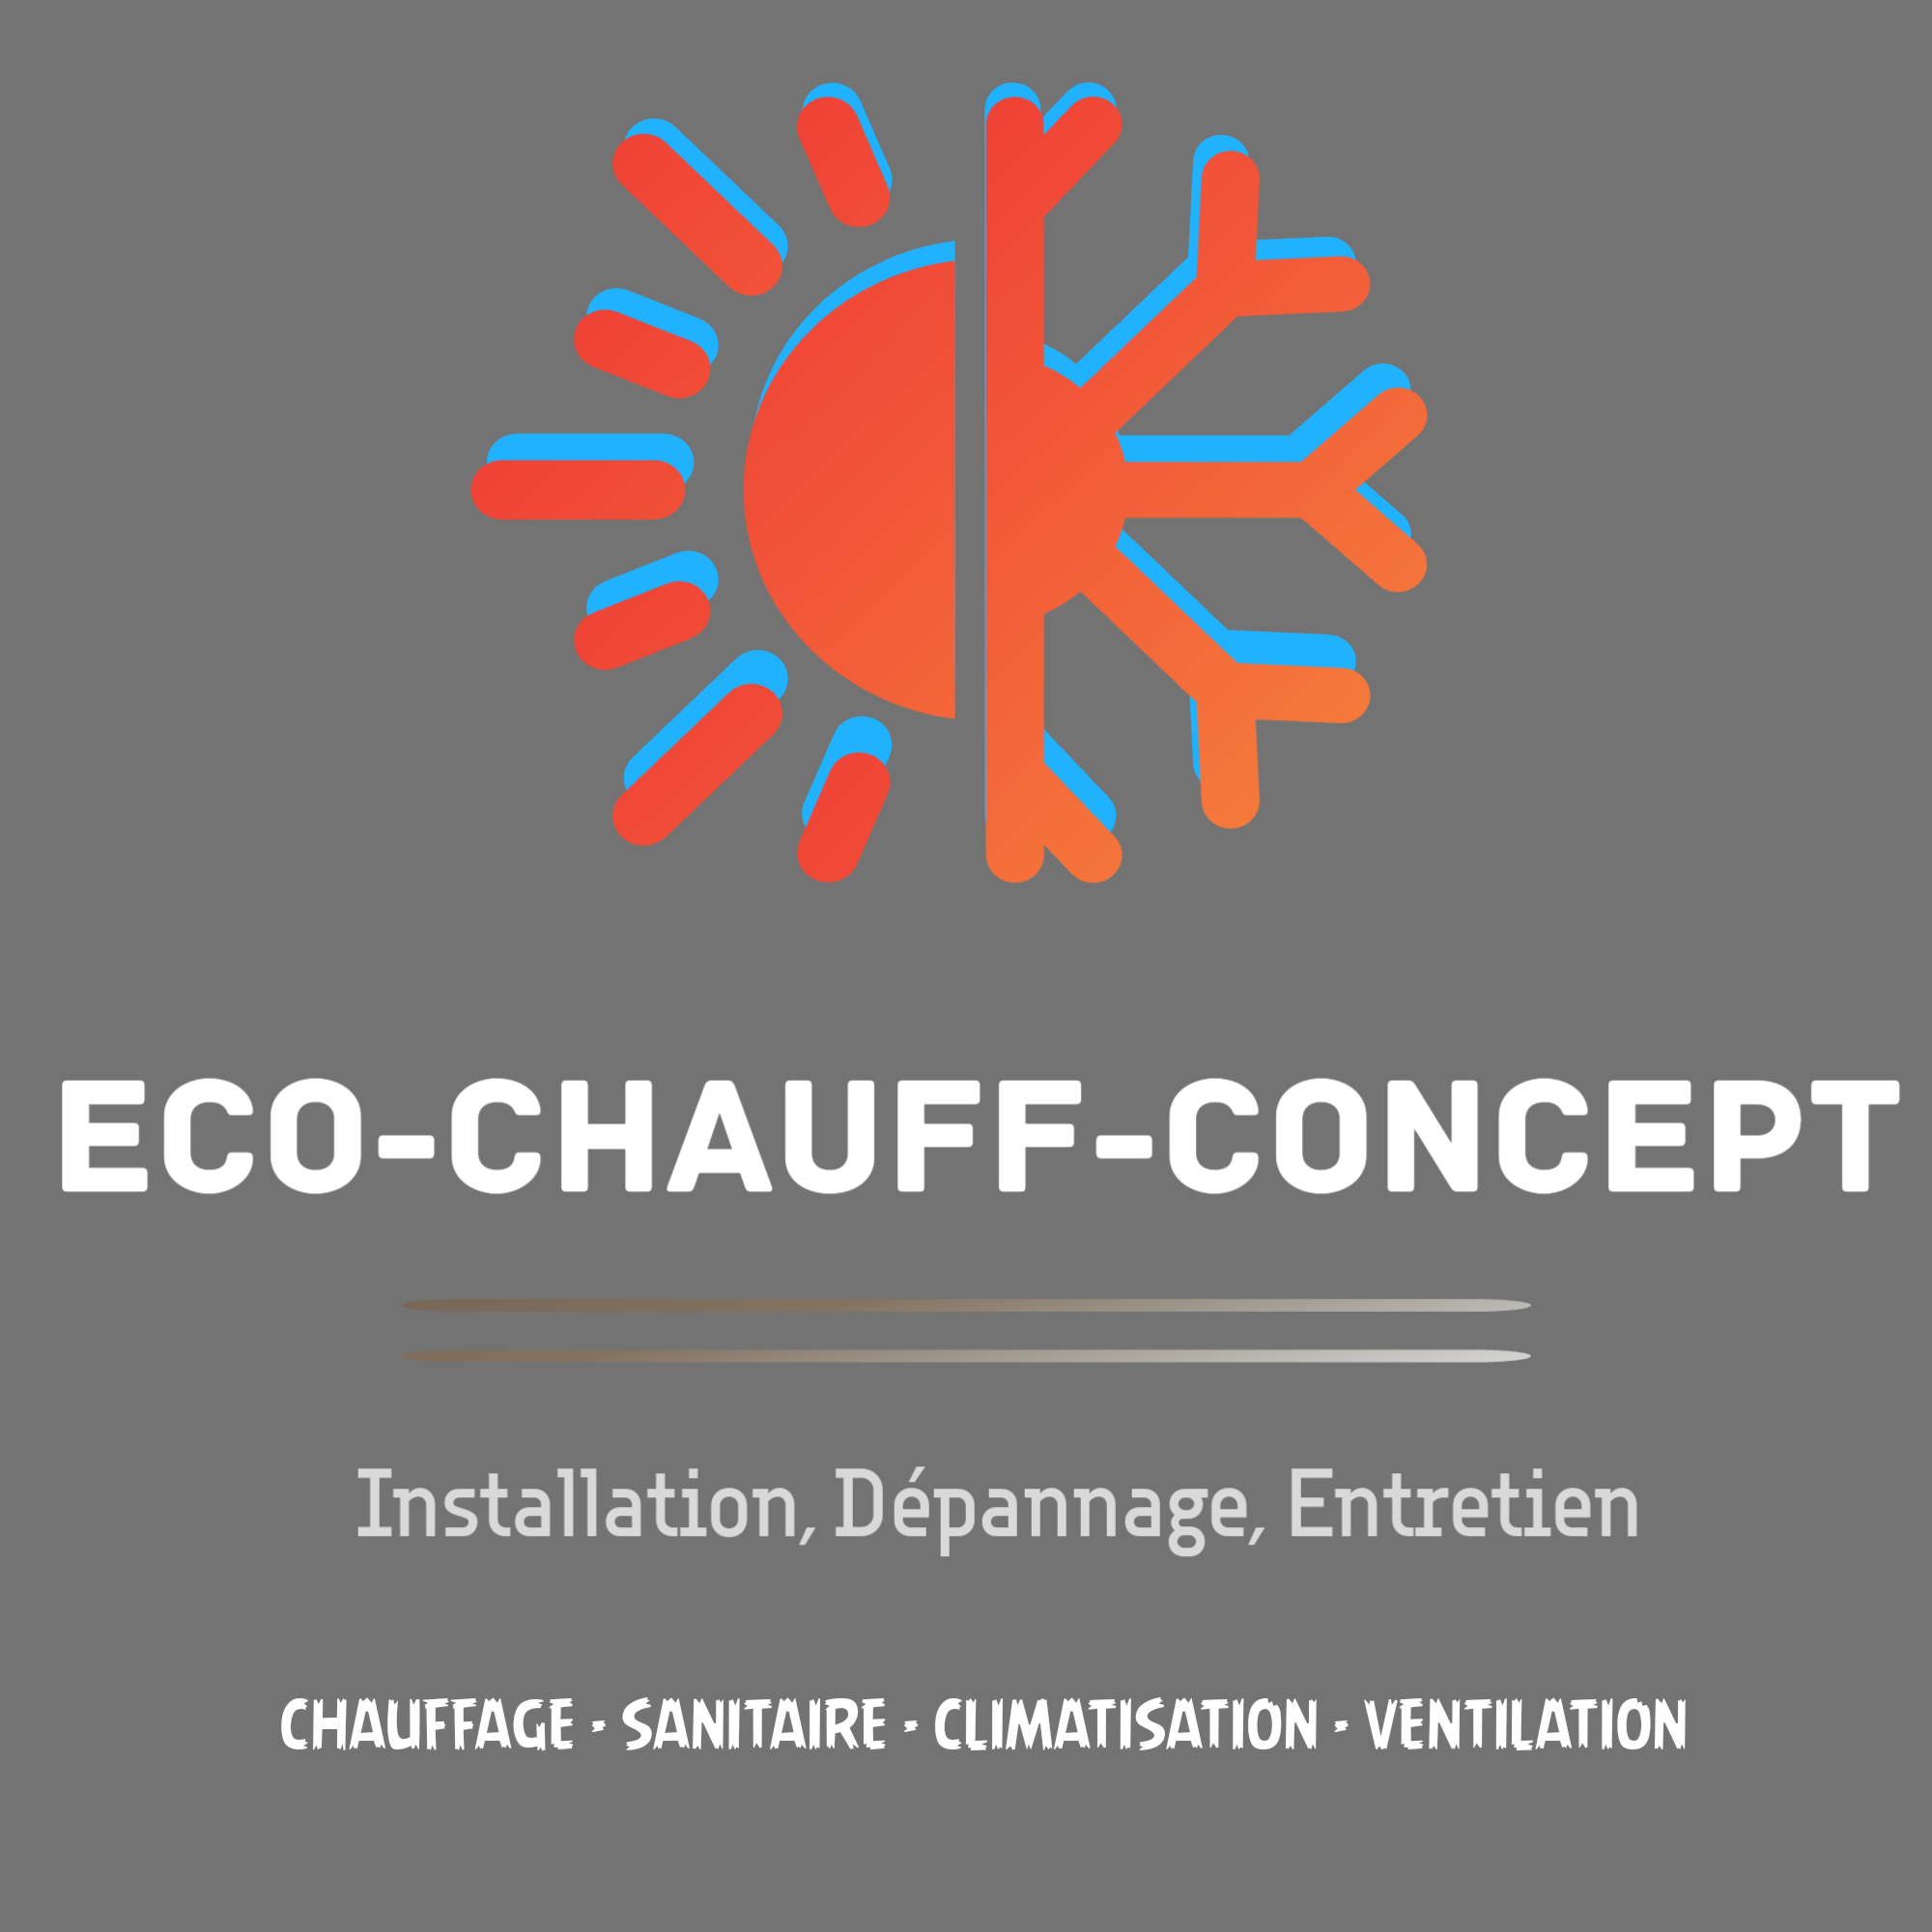 Eco-chauff-concept